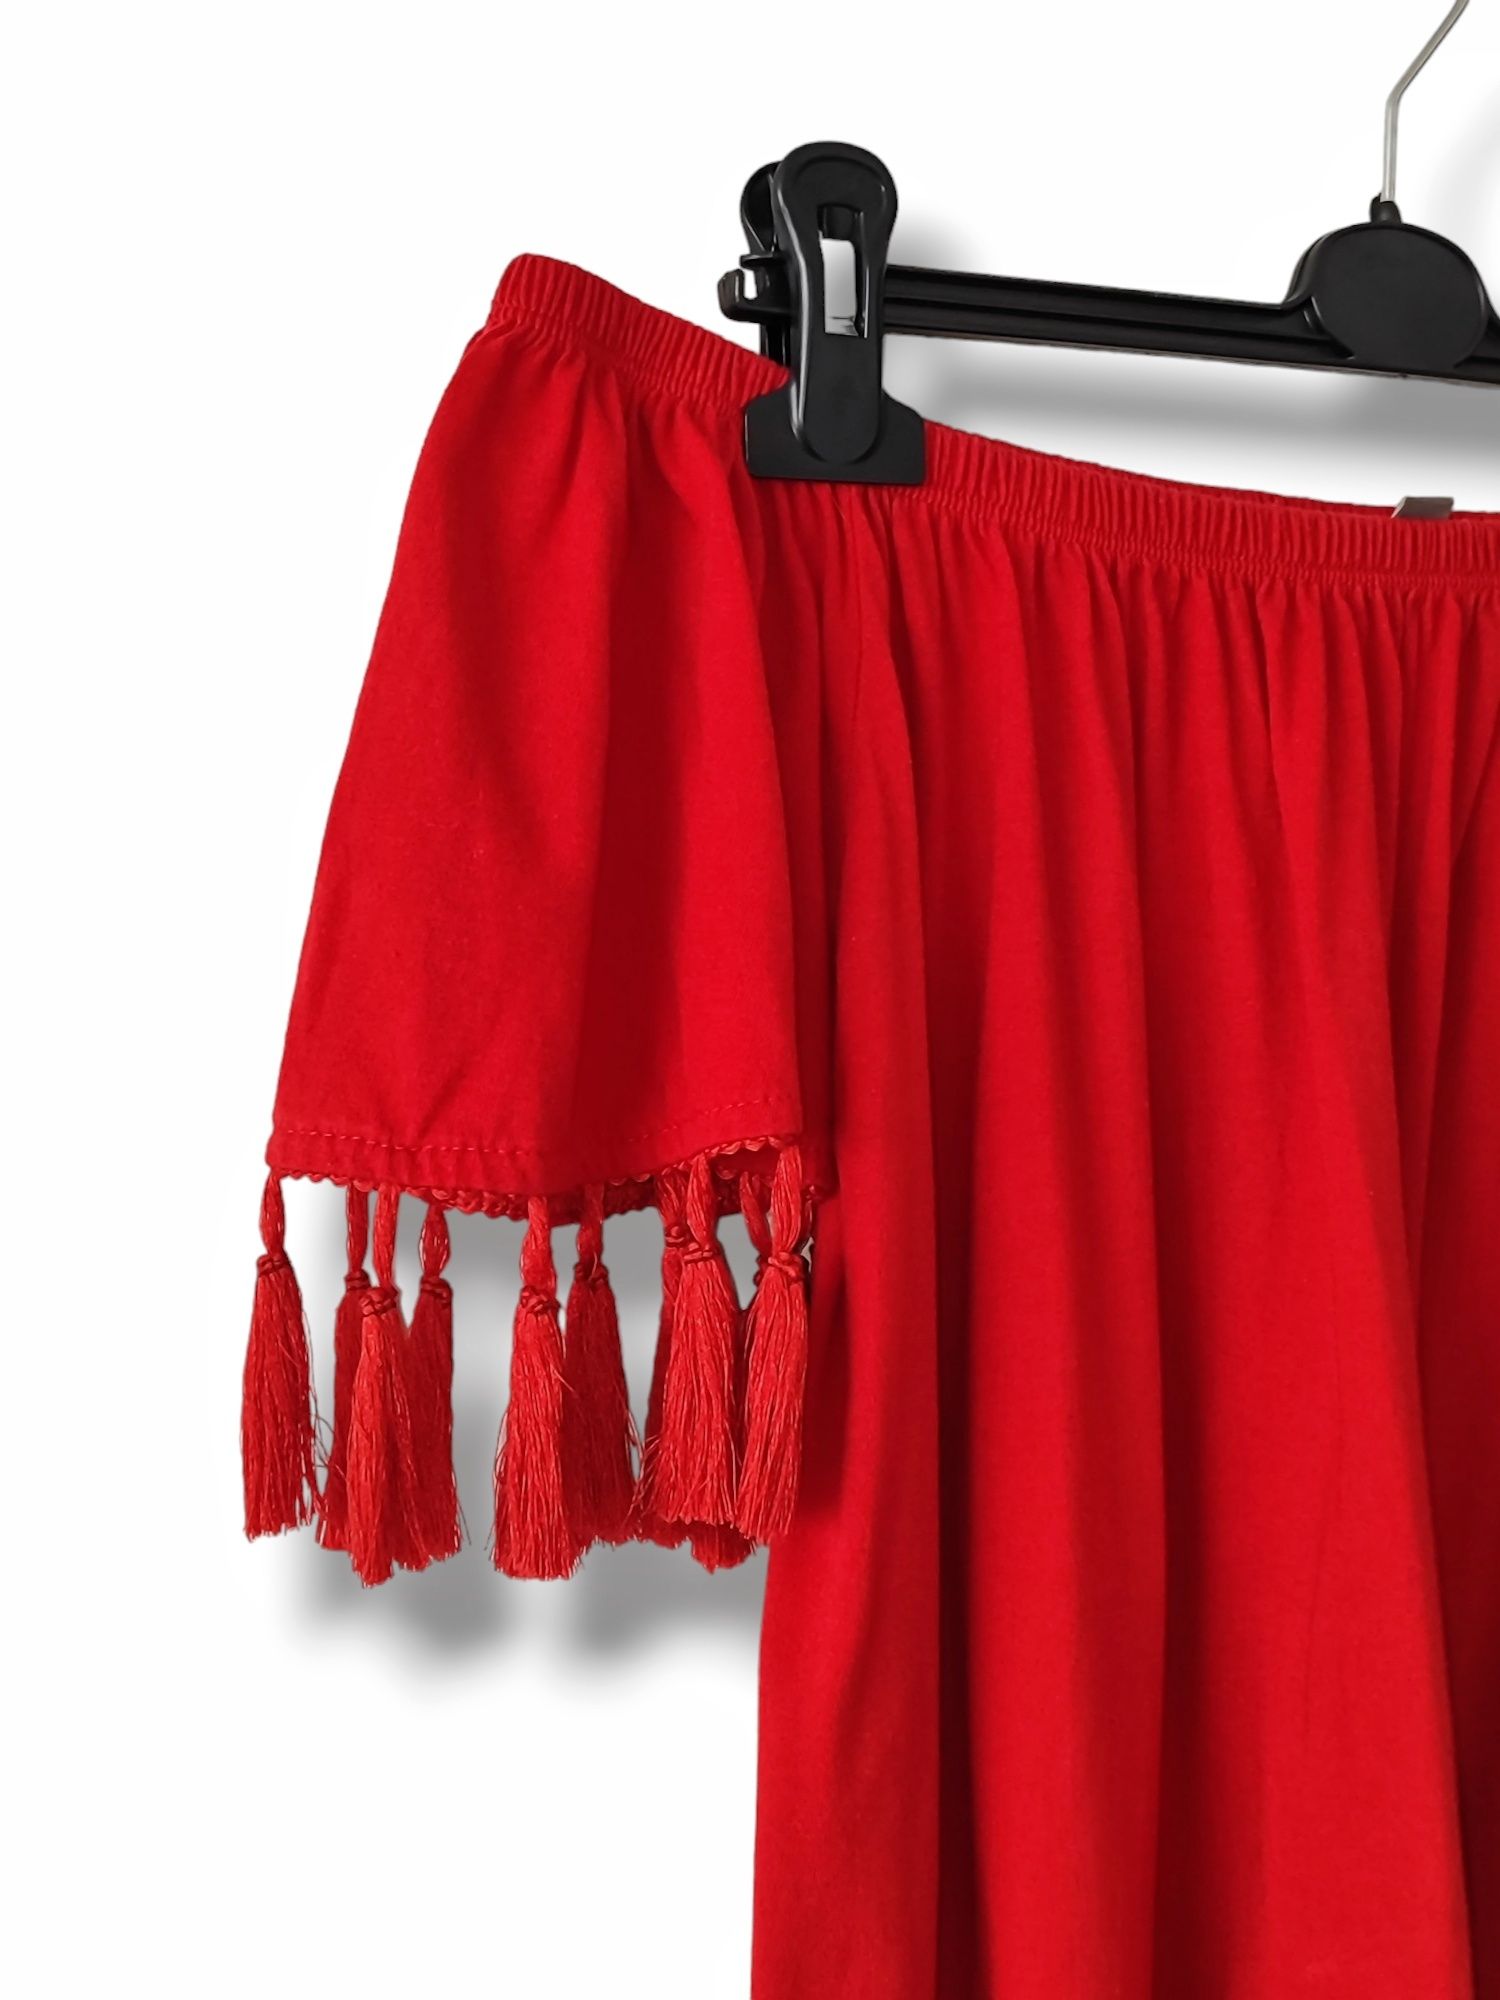 Asos hiszpanka z frędzlami czerwona luźna sukienka na lato wakacje